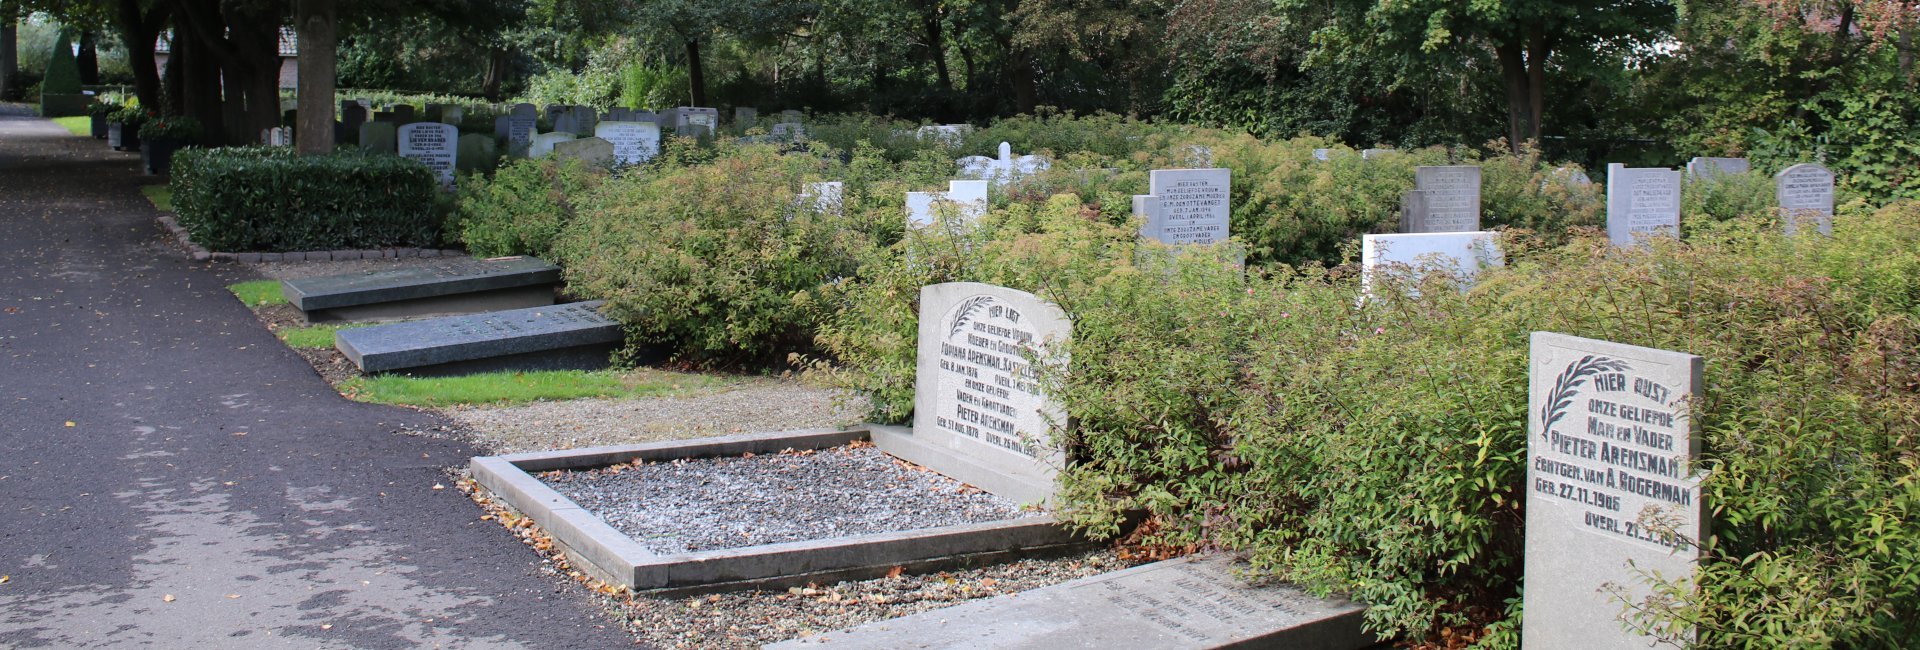 algemene begraafplaats in Stad aan 't Haringvliet